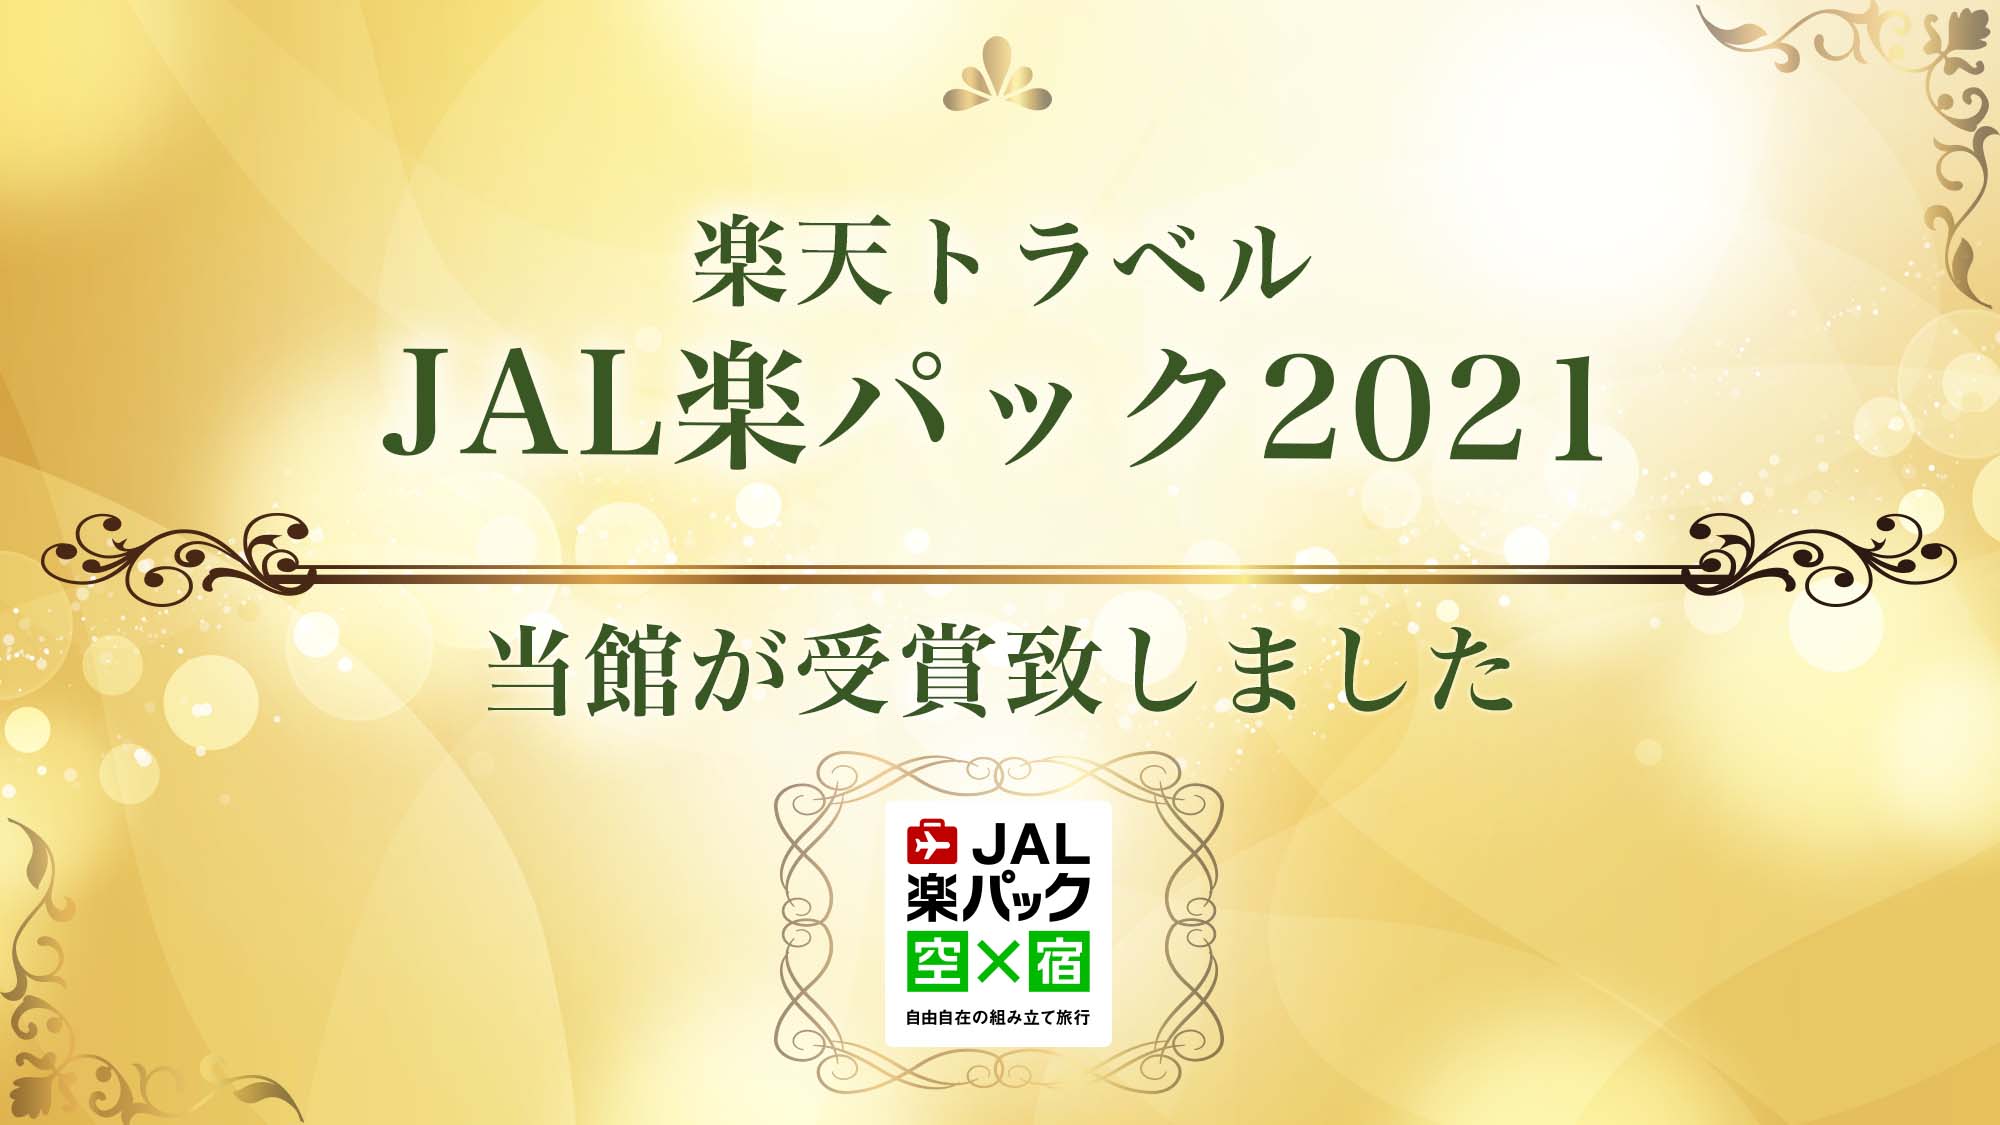 JAL楽パック2021を受賞いたしました